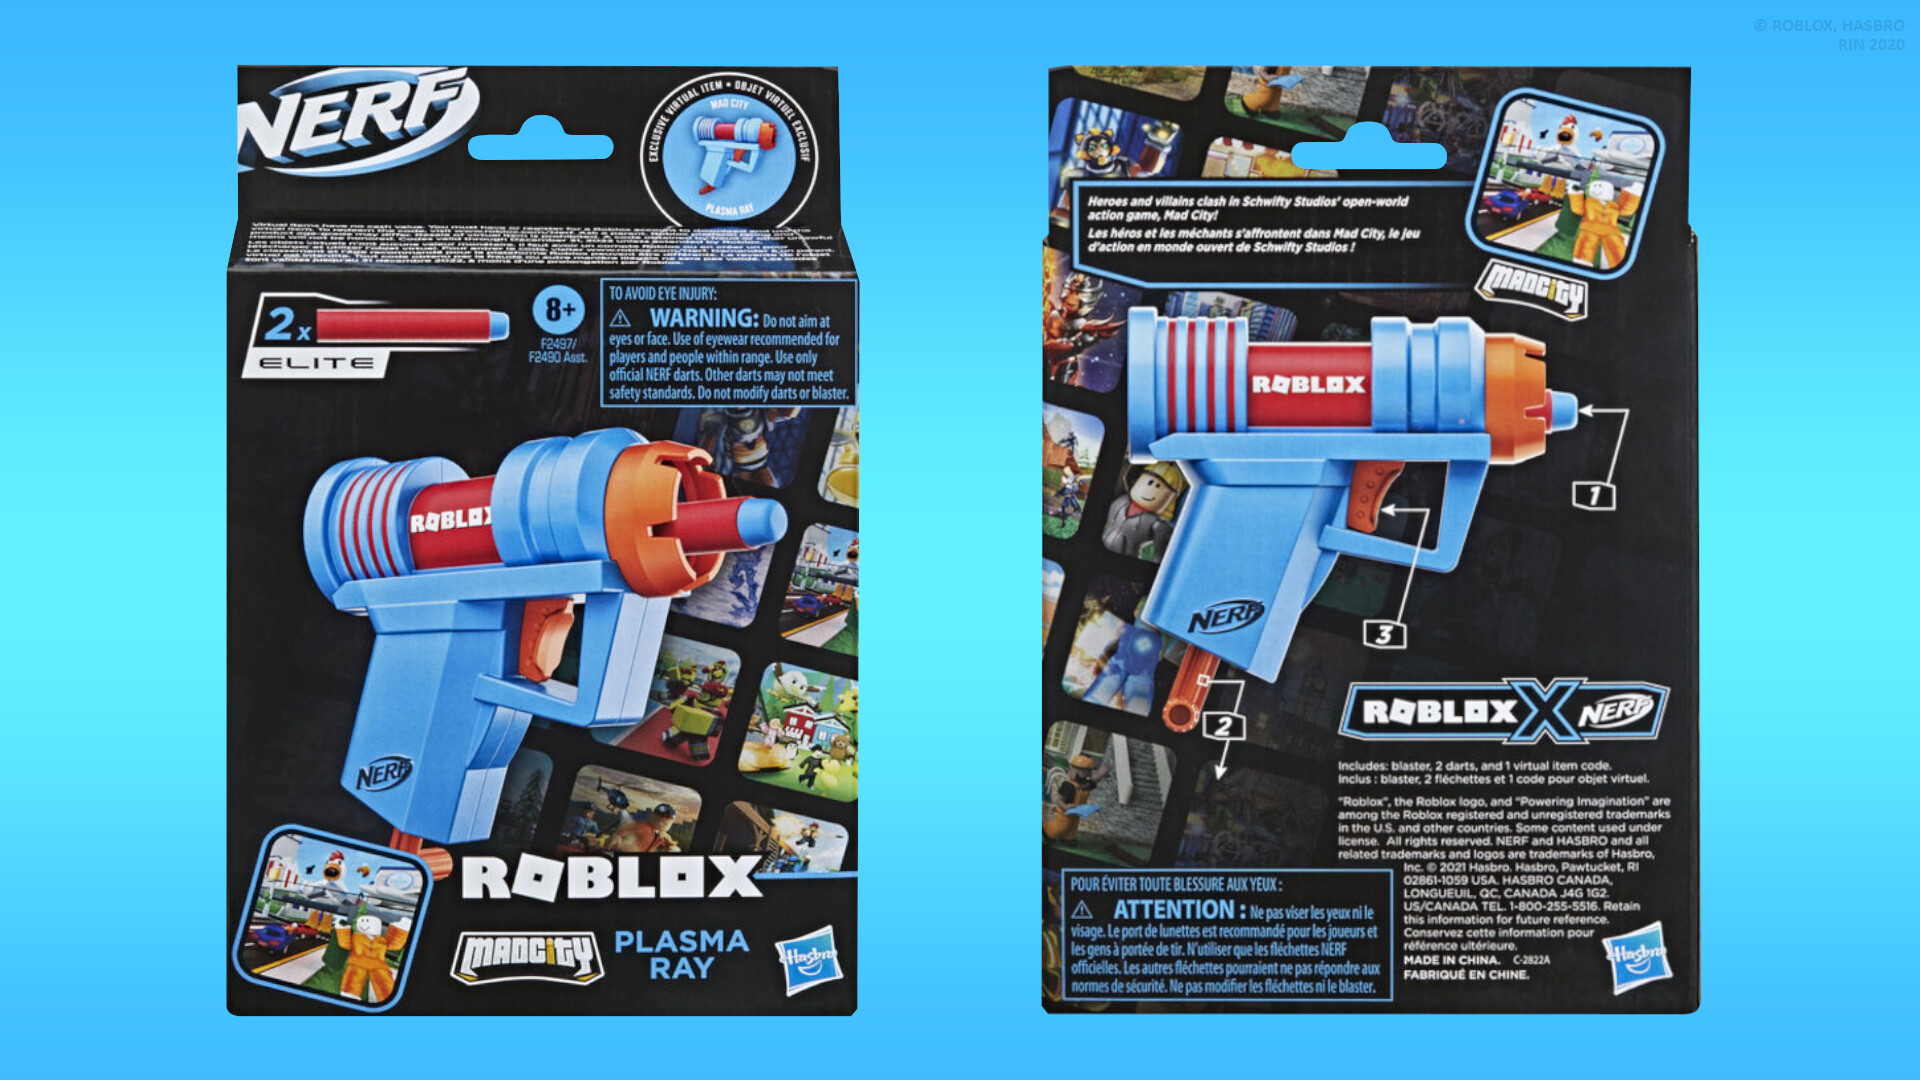 Nerf Roblox MM2 Dartbringer Dart Blaster Toy HH